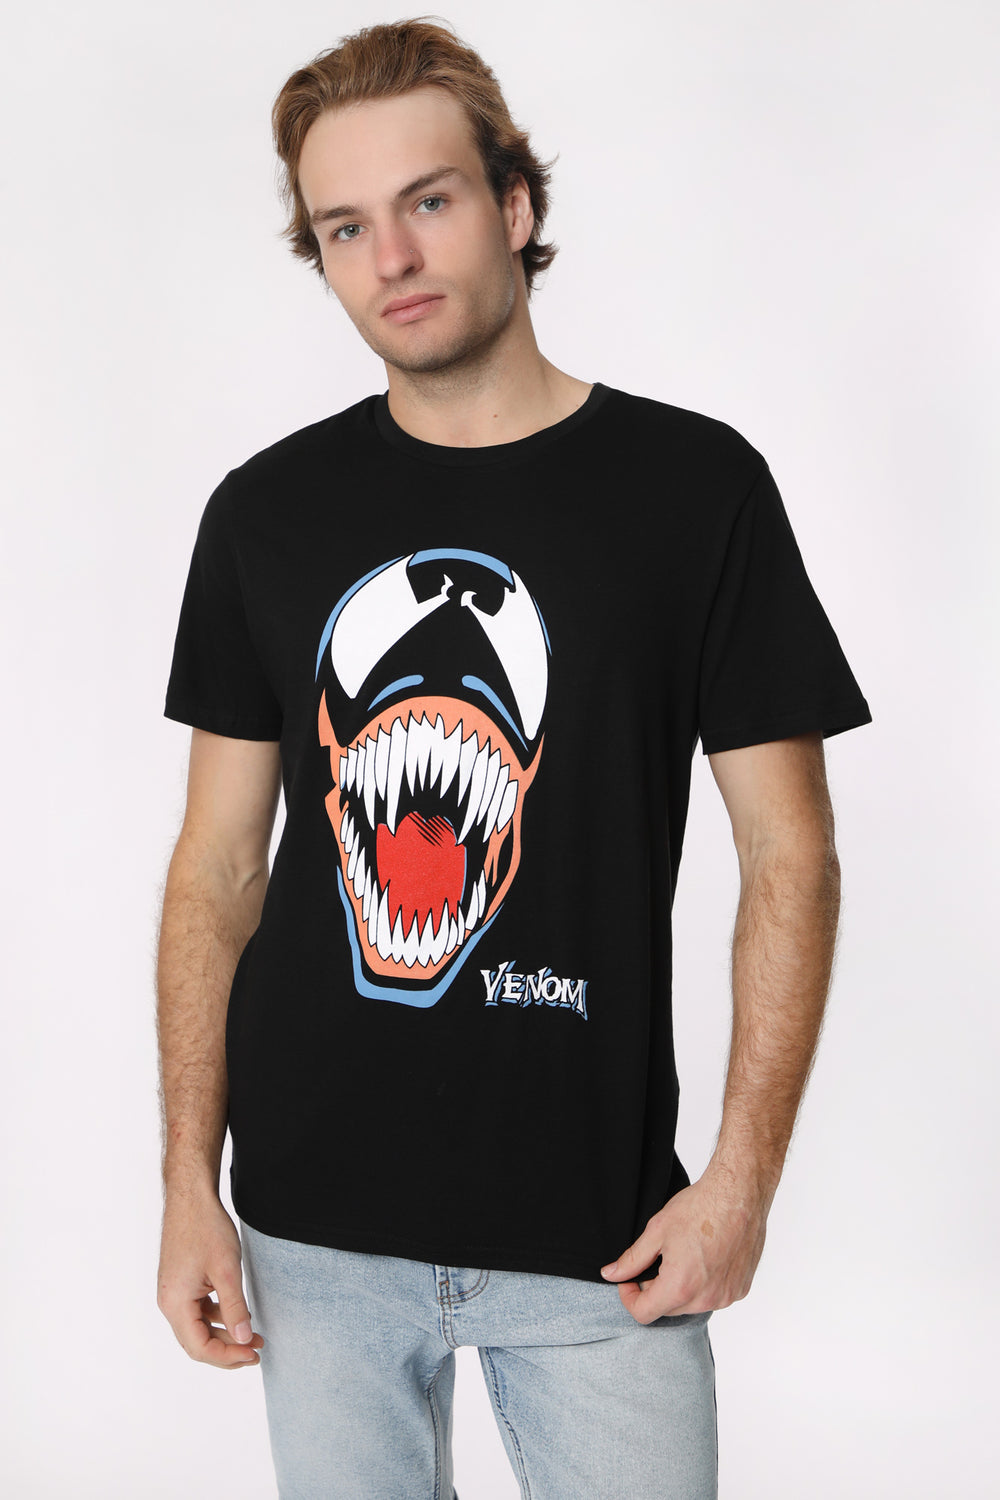 Mens Marvel Venom T-Shirt Mens Marvel Venom T-Shirt